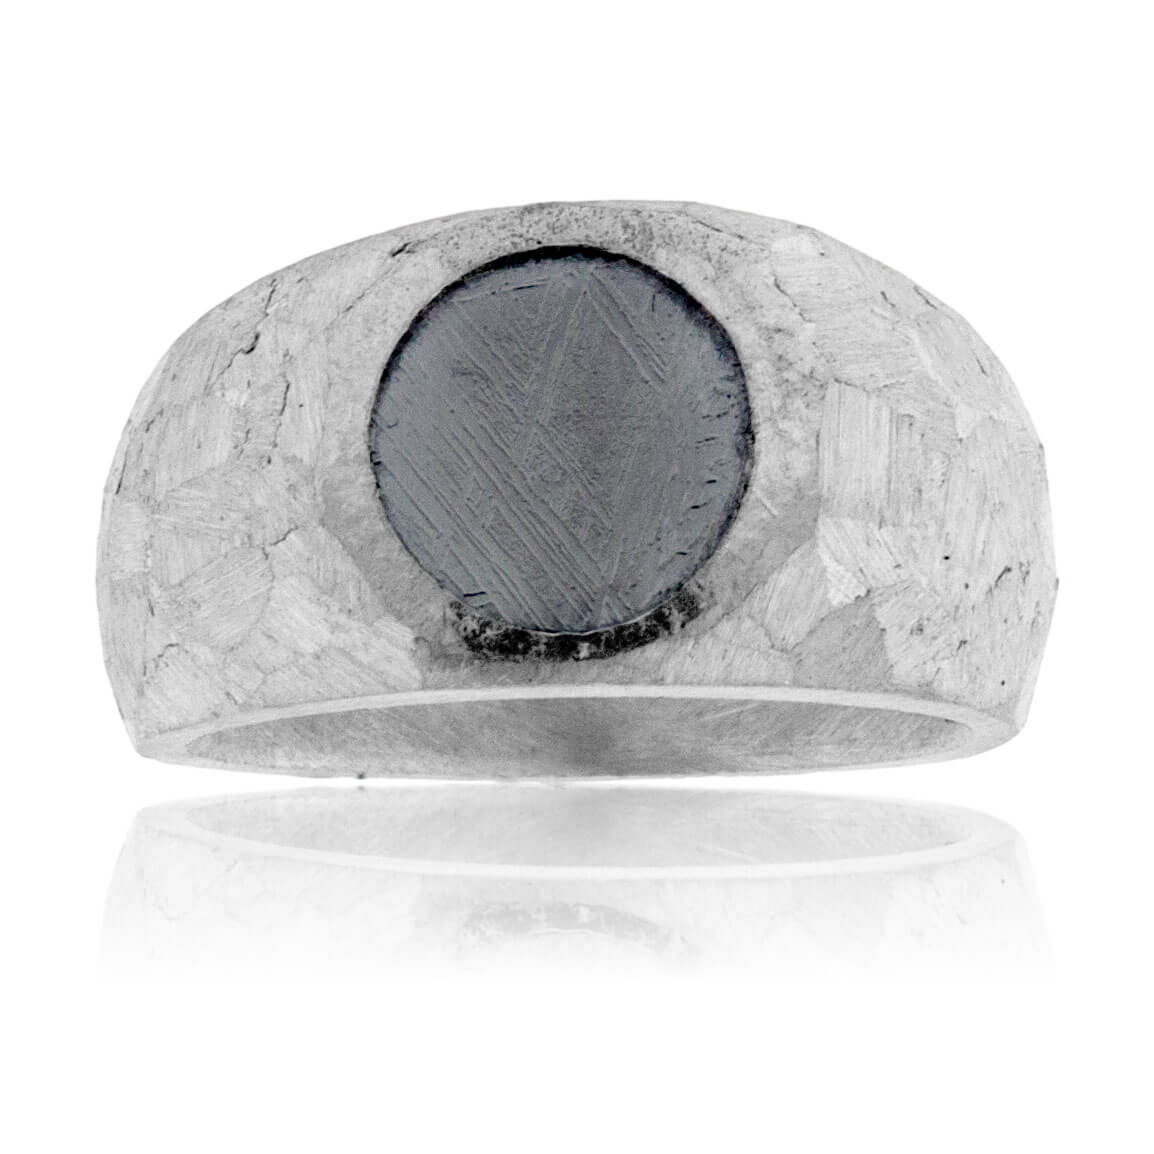 Meteorite Ring Engagement